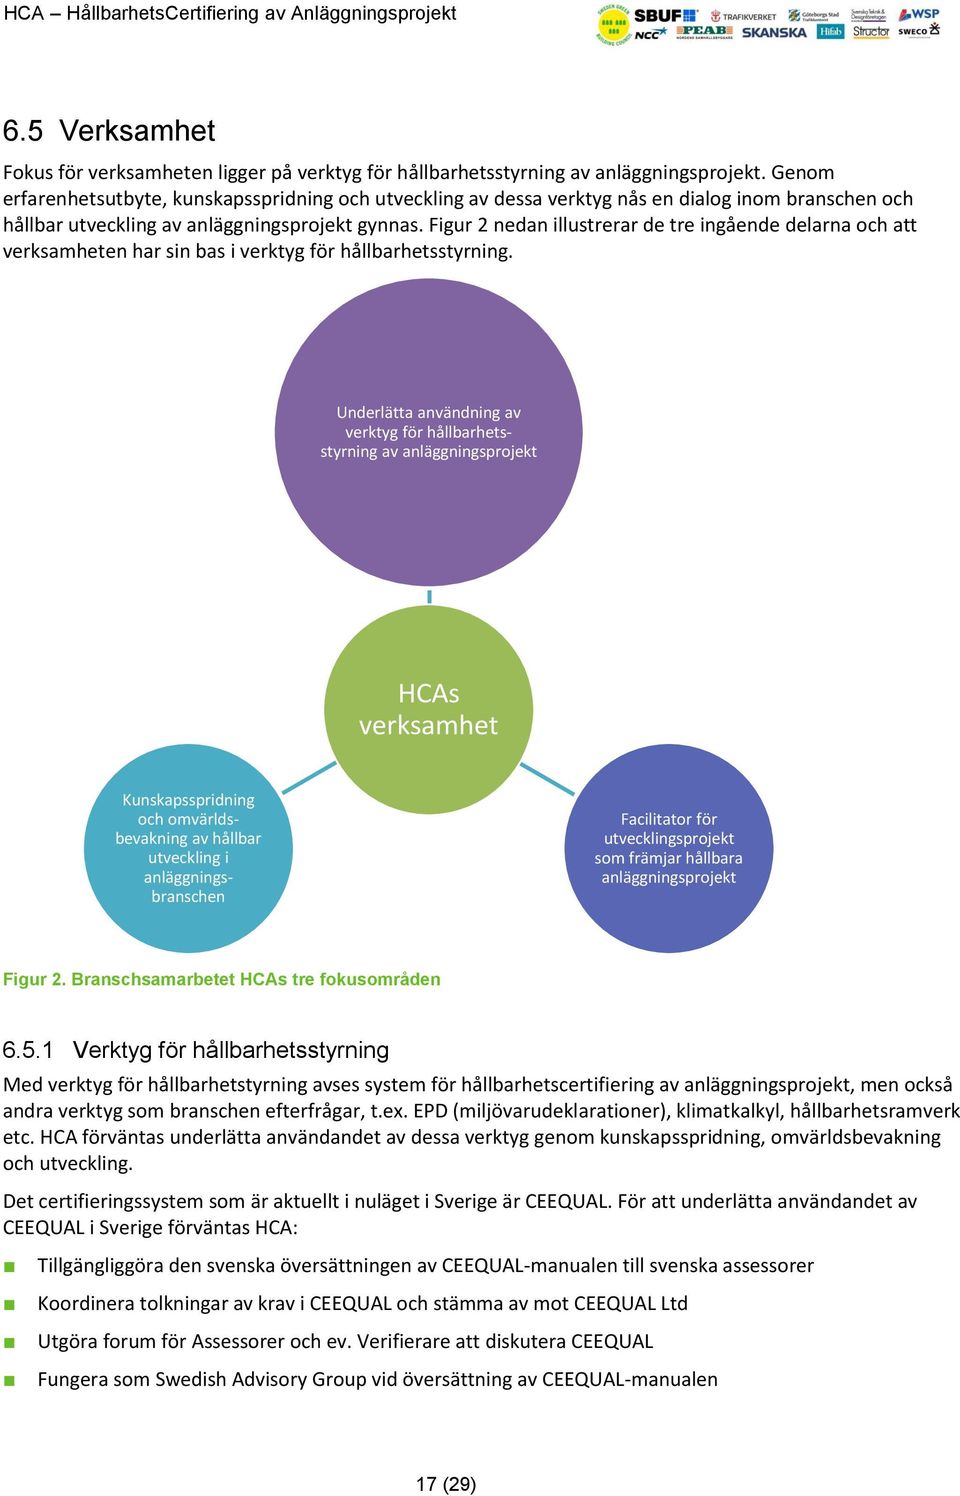 Figur 2 nedan illustrerar de tre ingående delarna och att verksamheten har sin bas i verktyg för hållbarhetsstyrning.